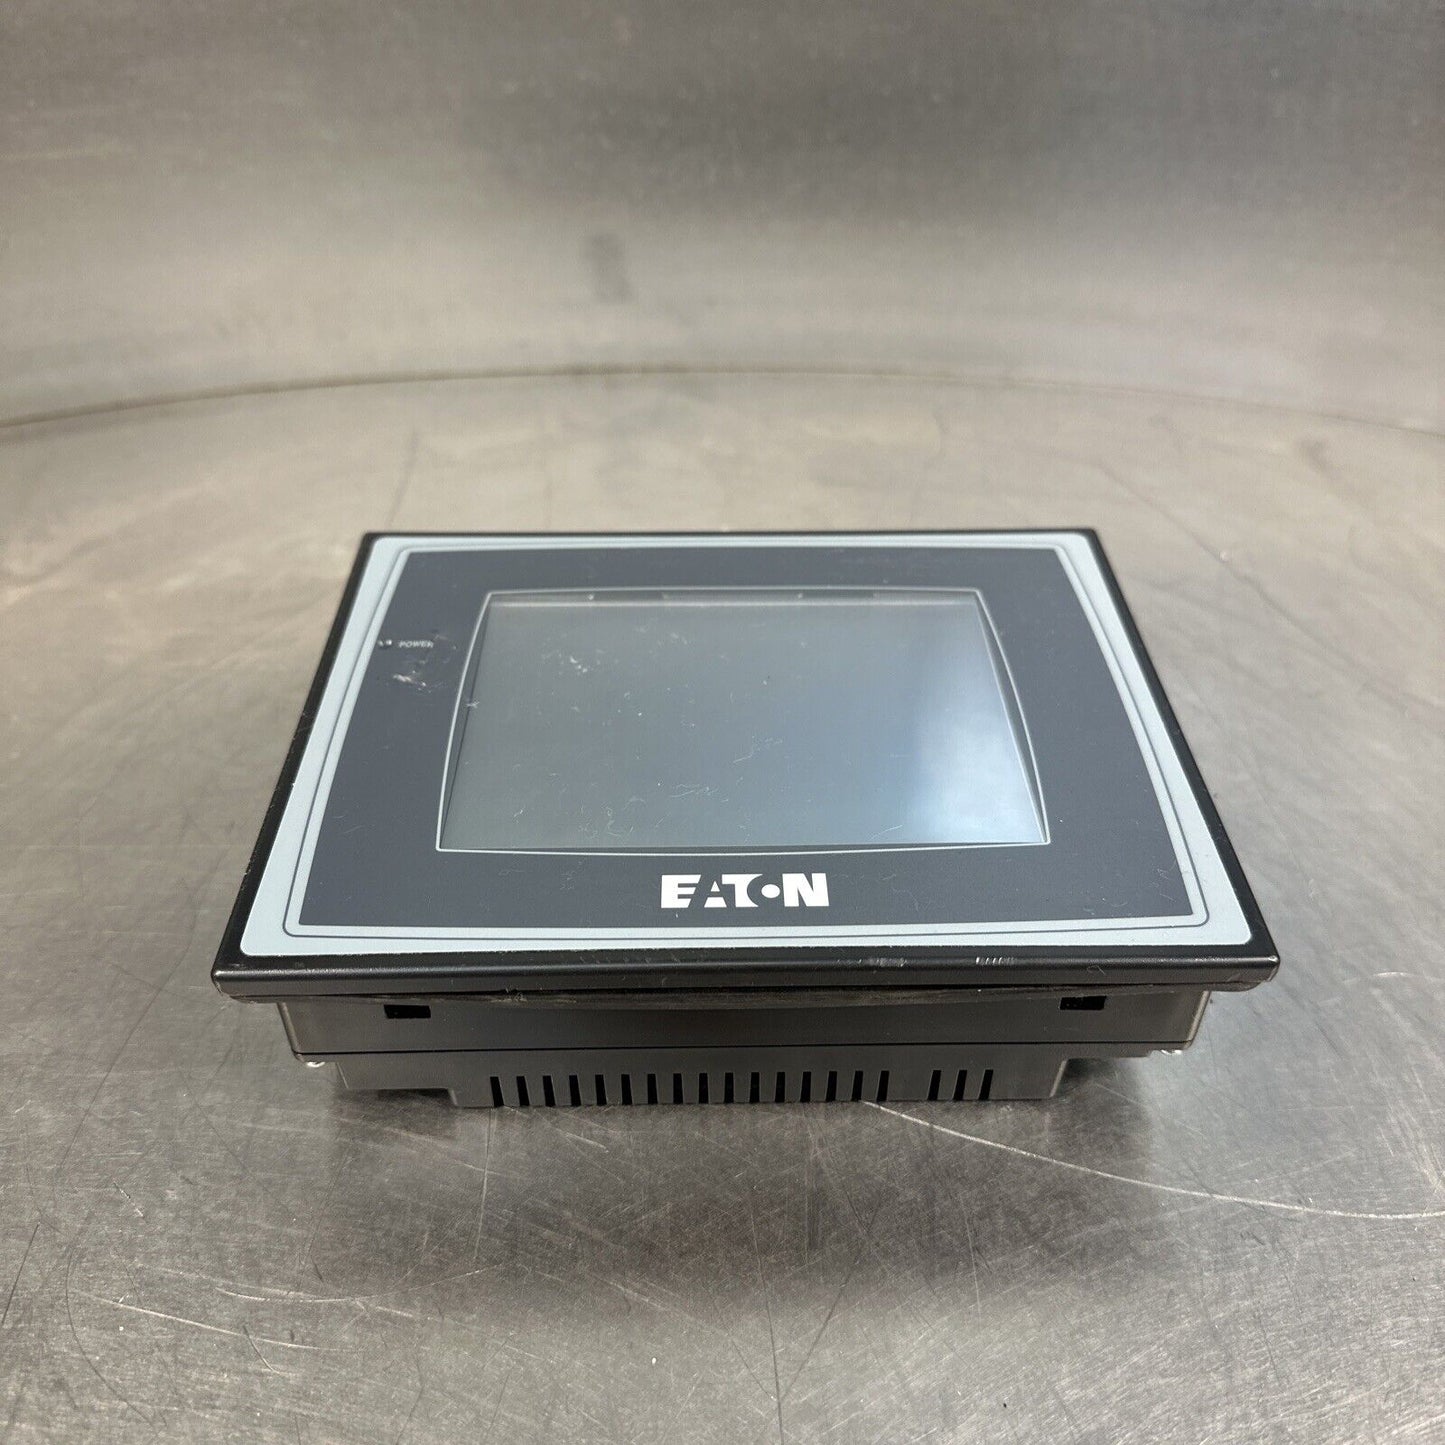 Eaton HMI06CU 6" Hmi 6" Color Tft Ts (BIN-1.1.1)